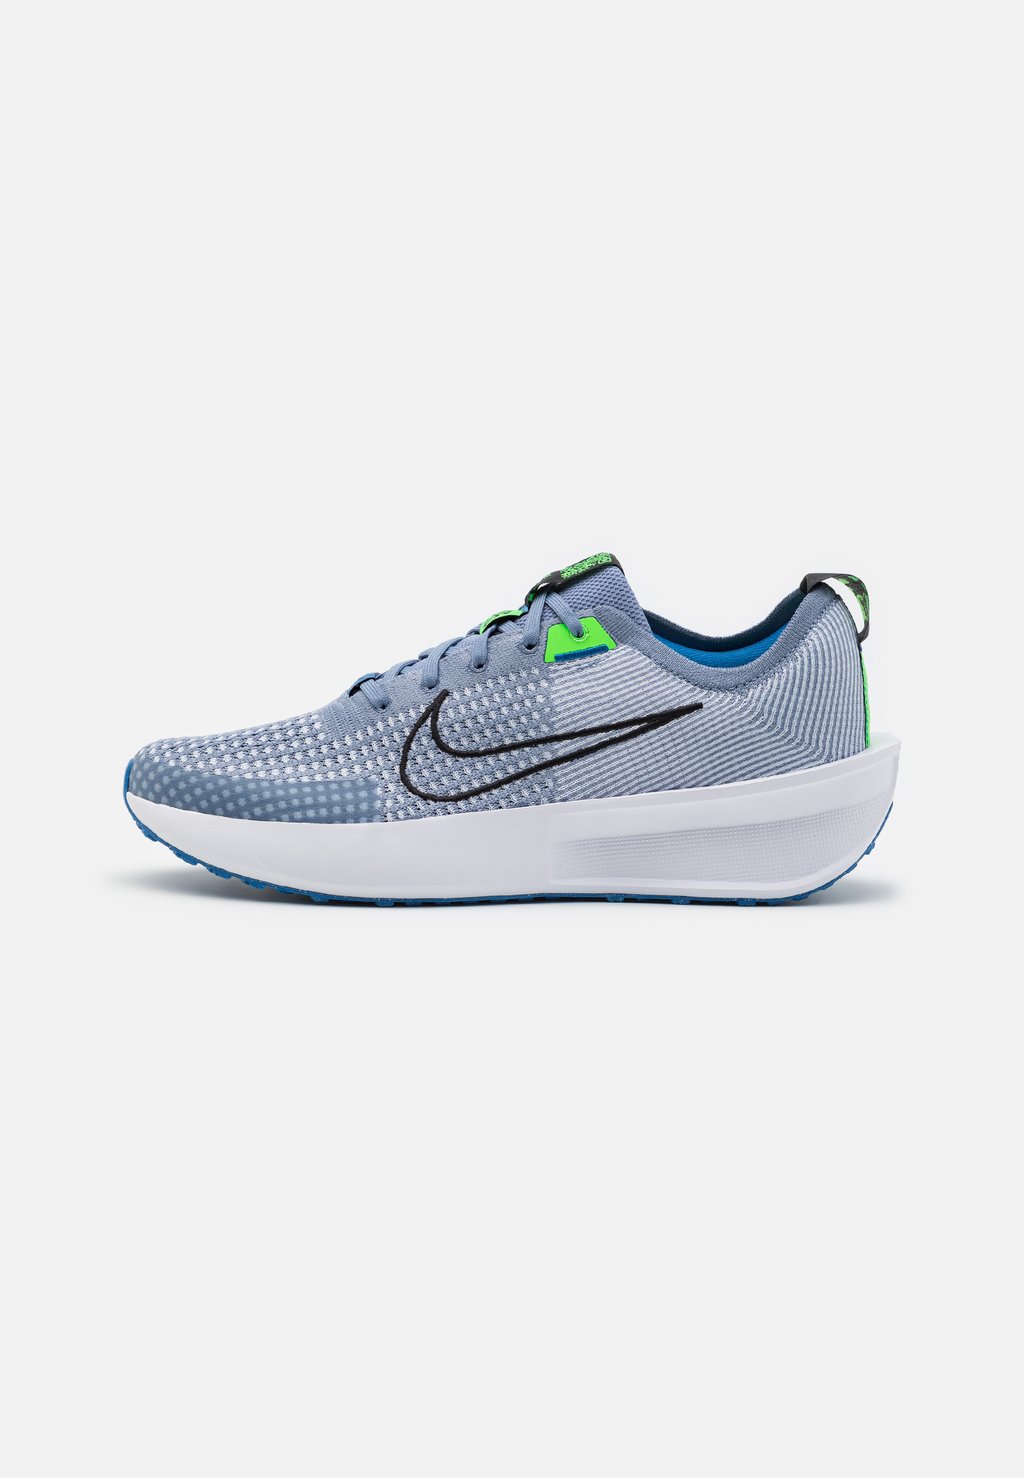 Нейтральные кроссовки Interact Run Nike, цвет ashen slate/black/football grey/star blue/green strike/white